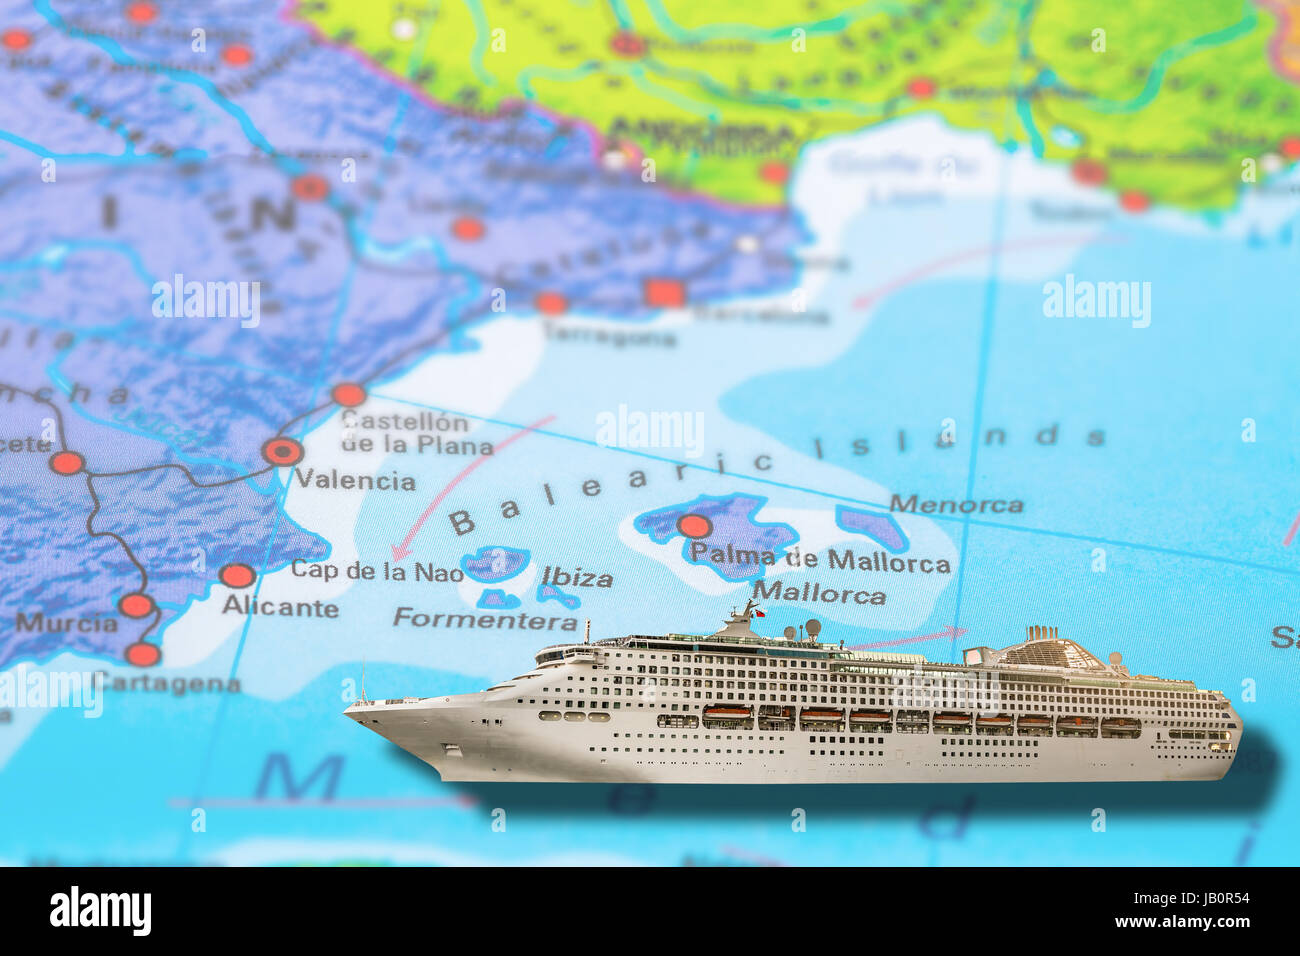 Ibiza, Formentera, Valencia in Spanien Kreuzfahrt Schiff reisen auf bunten politische Karte der Balearischen Inseln in Europa. Geopolitische Schulatlas. Urlaub ein Stockfoto